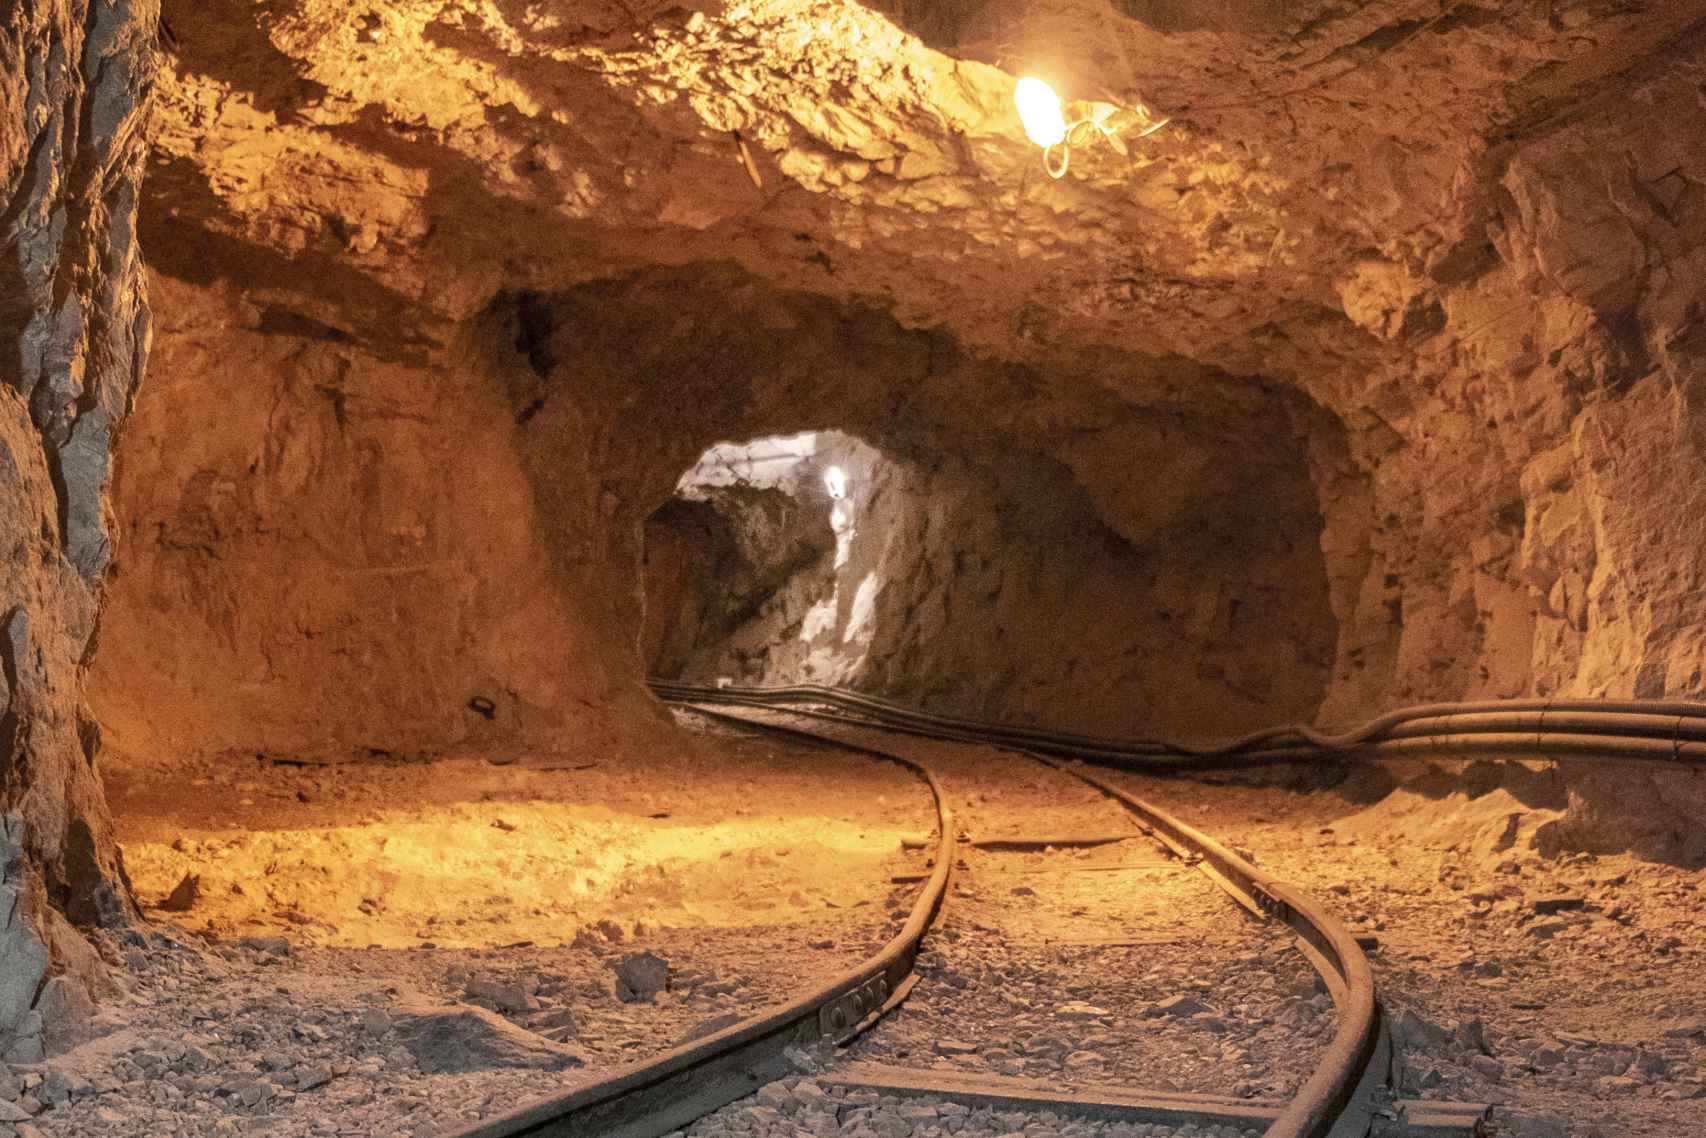 Galería de la mina Beta, la antigua mina de uranio donde almacenaron al principio en El Cabril los residuos radiactivos, desde los años 60 y hasta mediados de los 80.